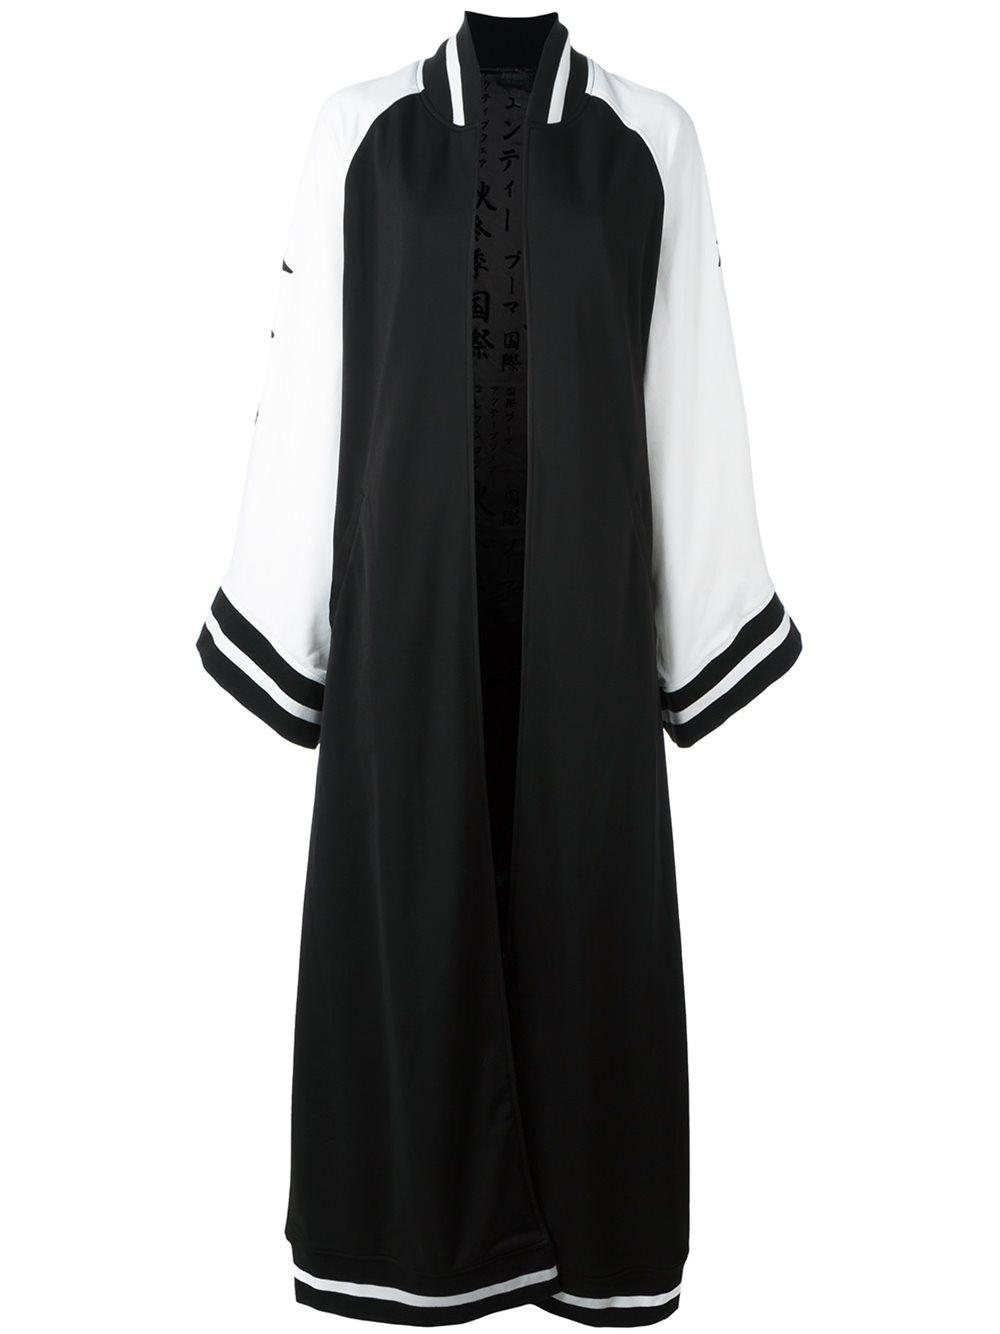 PUMA Synthetic Fenty X Rihanna Kimono Maxi Track Jacket in Black | Lyst